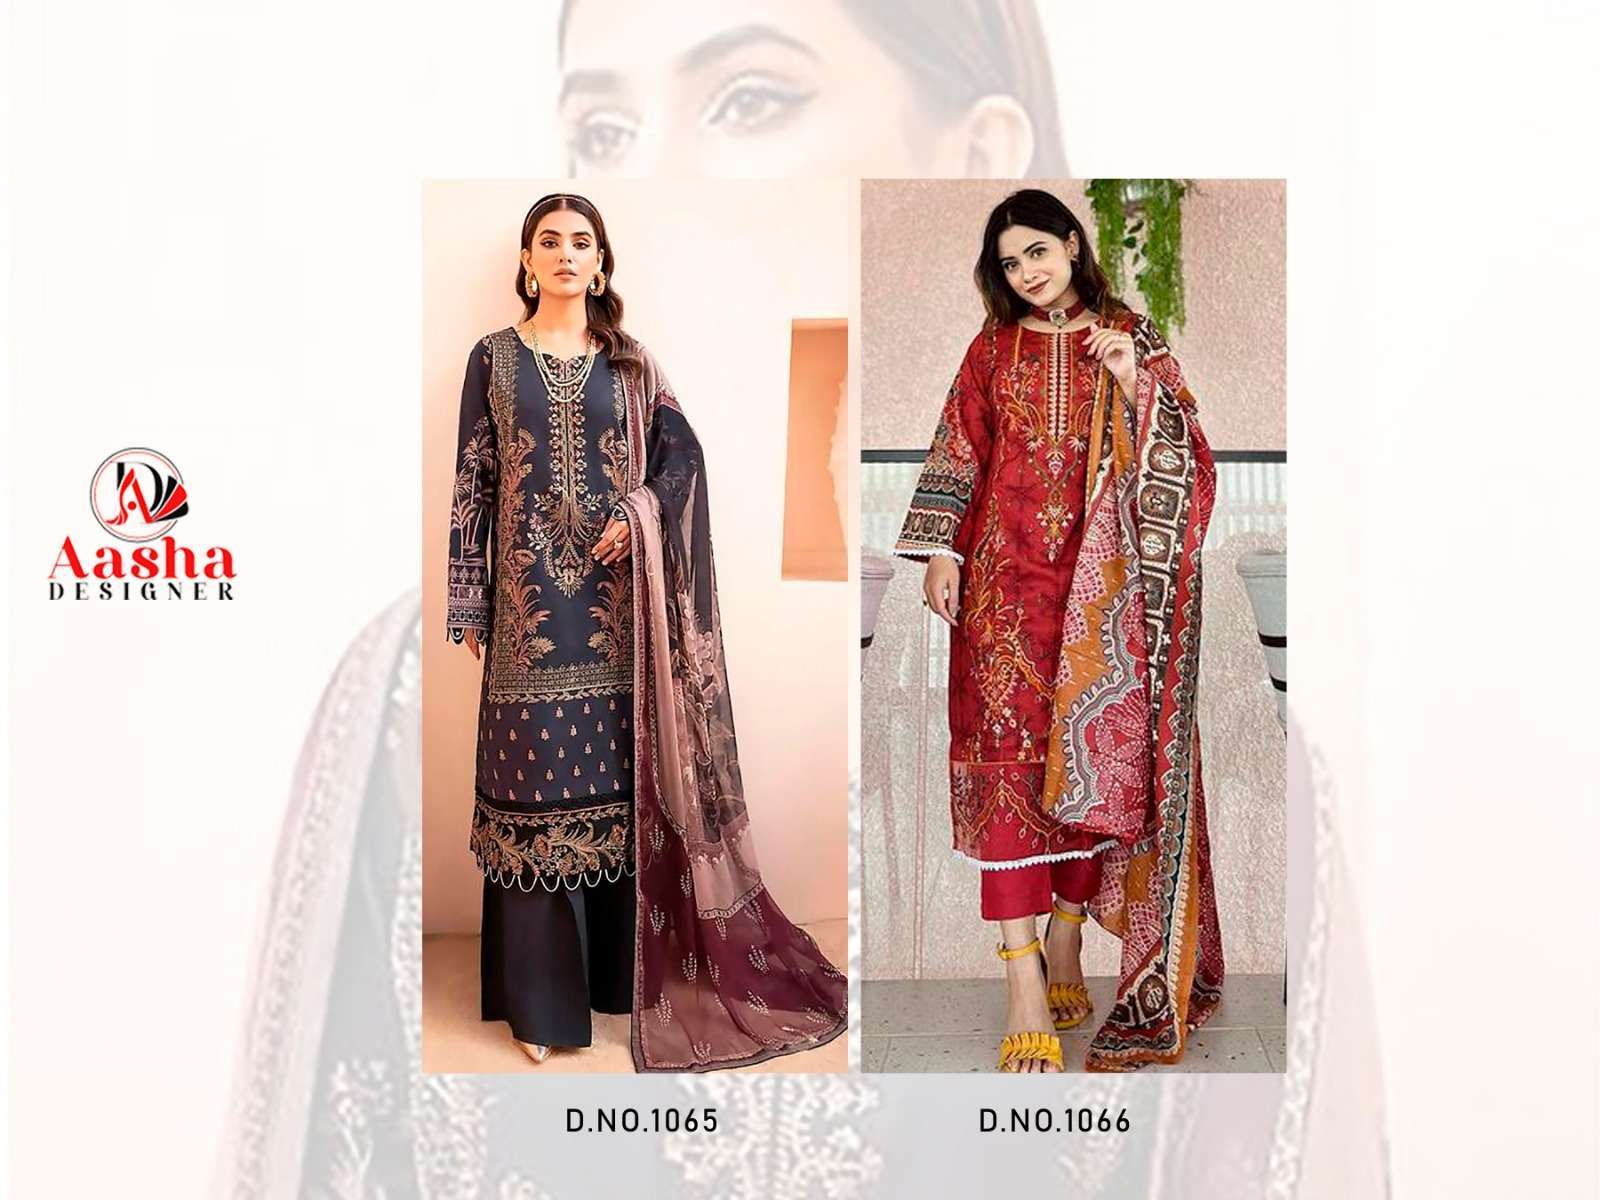 Aasha Chevron Summer Collection Chiffon Dupatta Pakistani Suit Wholesale market in India